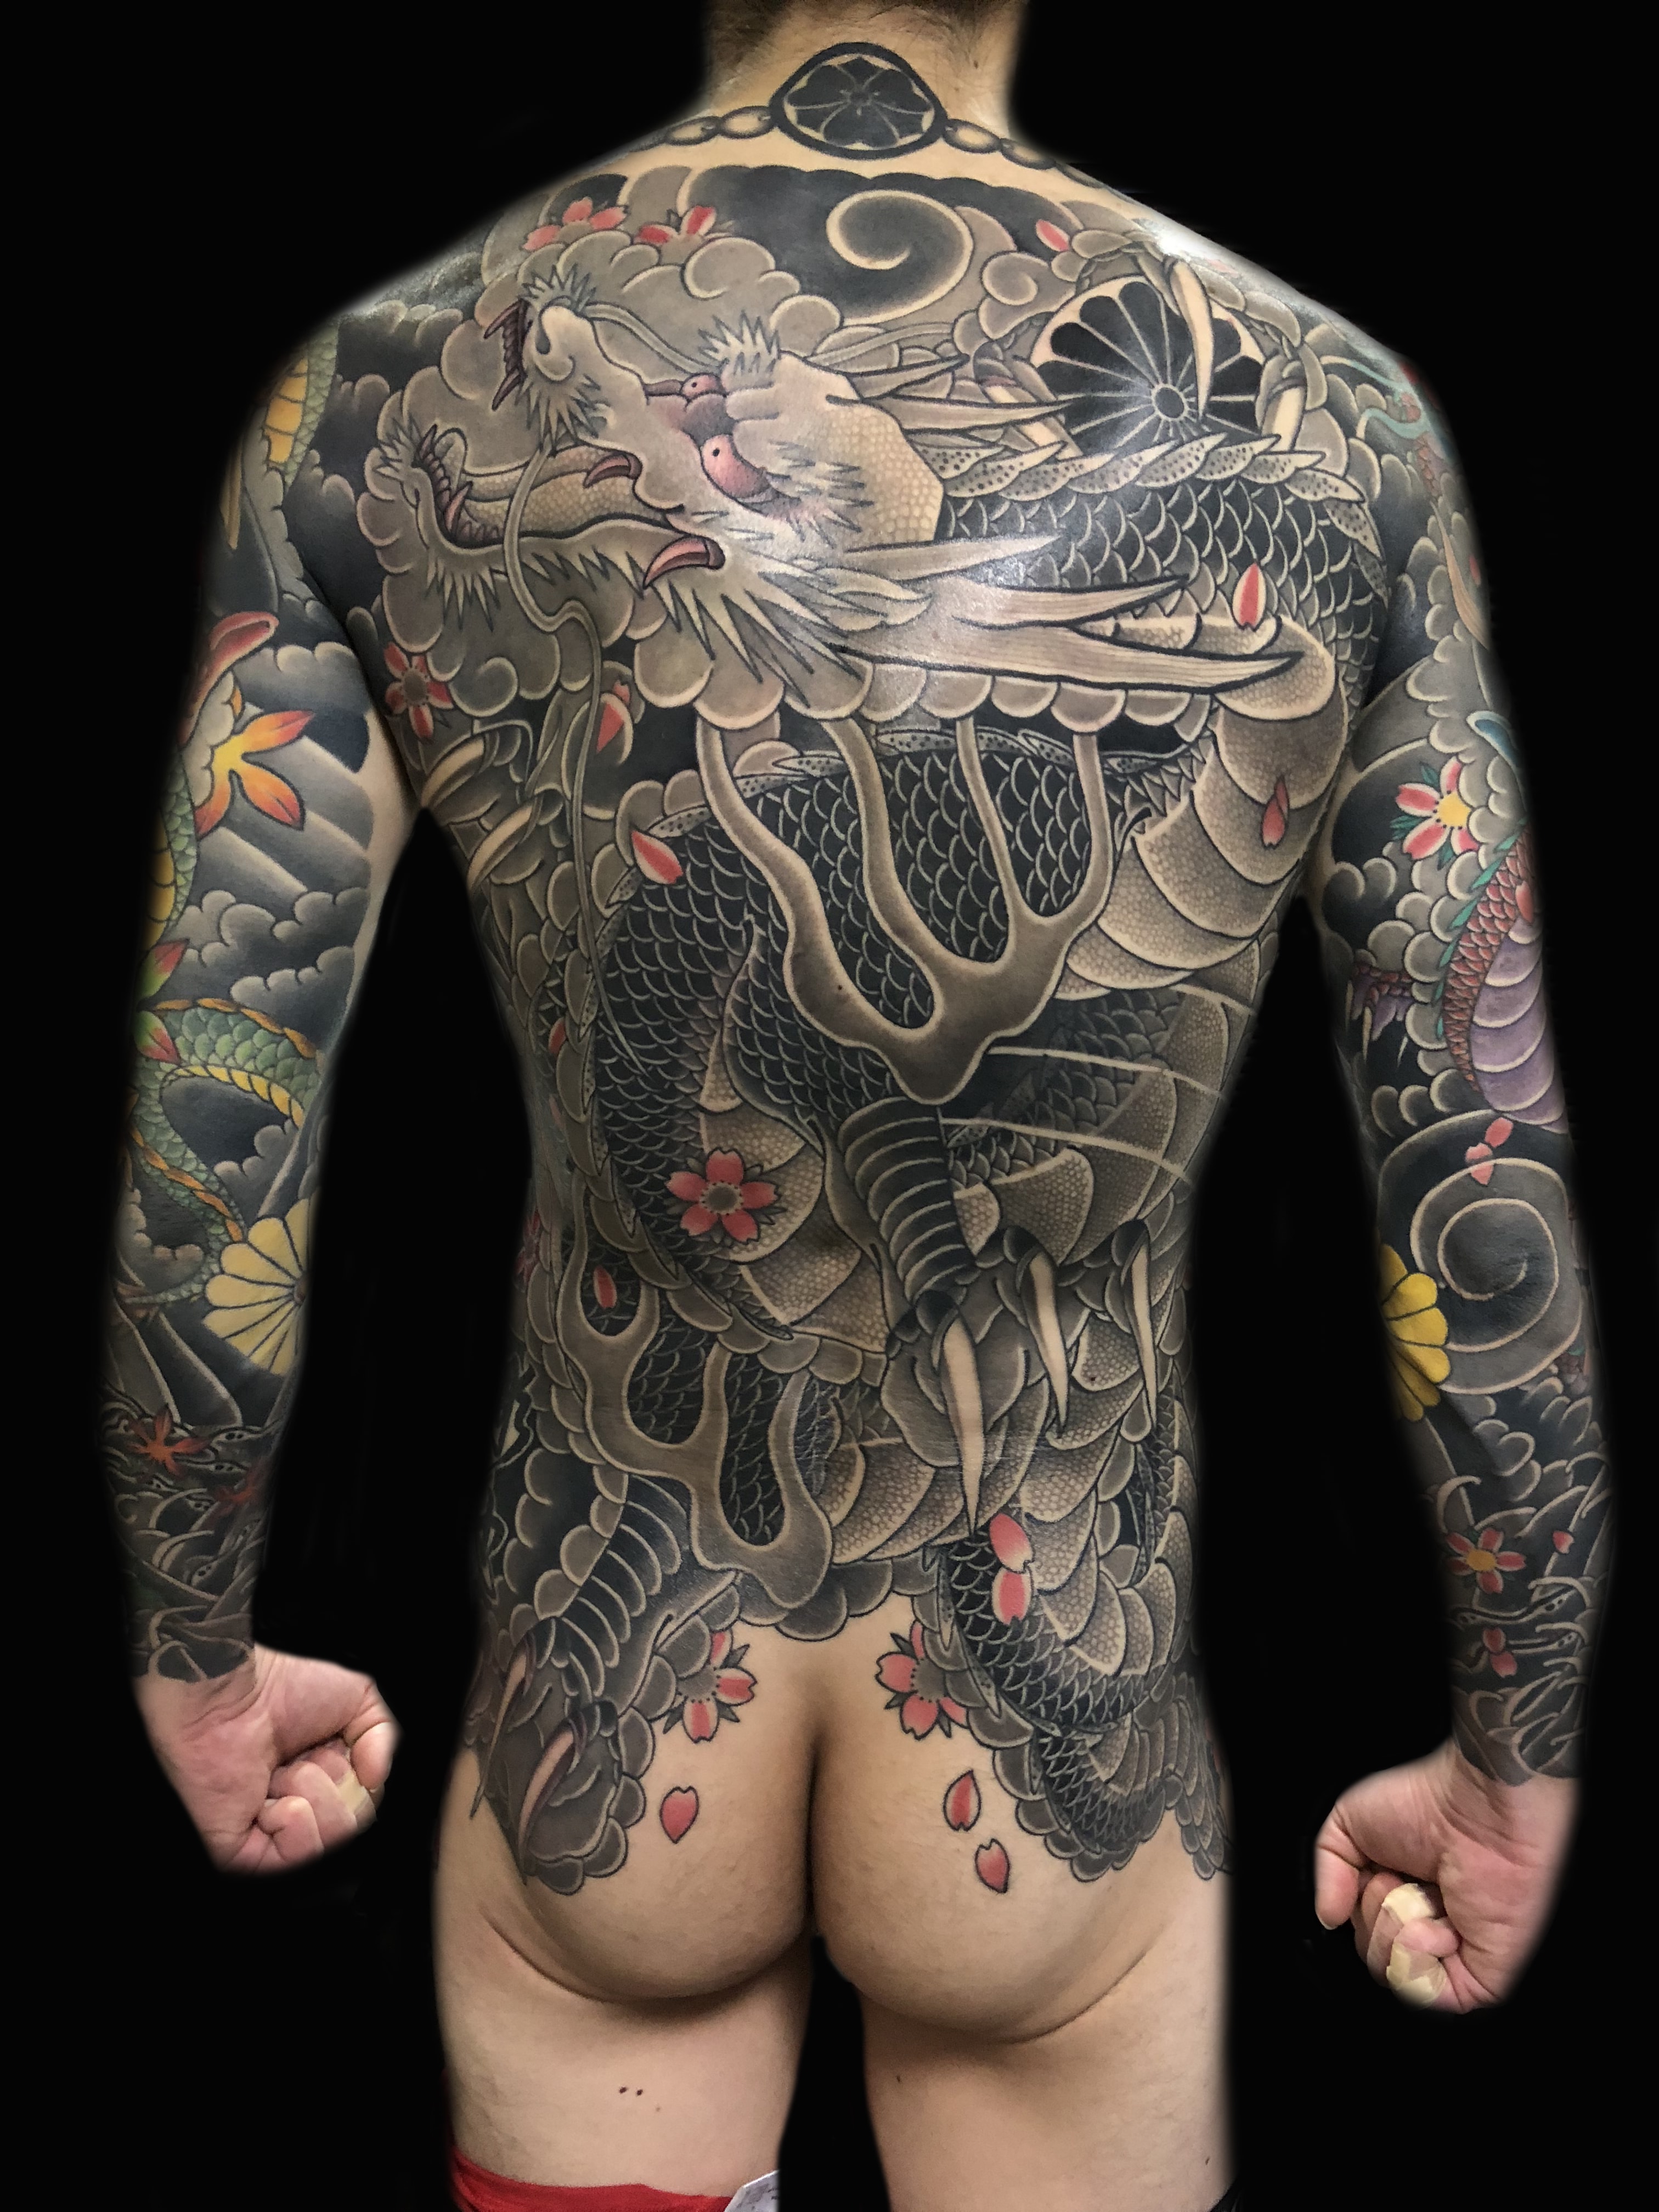 龍 ドラゴン のタトゥー 刺青 意味やデザインについて Nine State Design 大阪 日本橋 タトゥースタジオ Osaka Tattoo 刺青 和彫り タトゥー